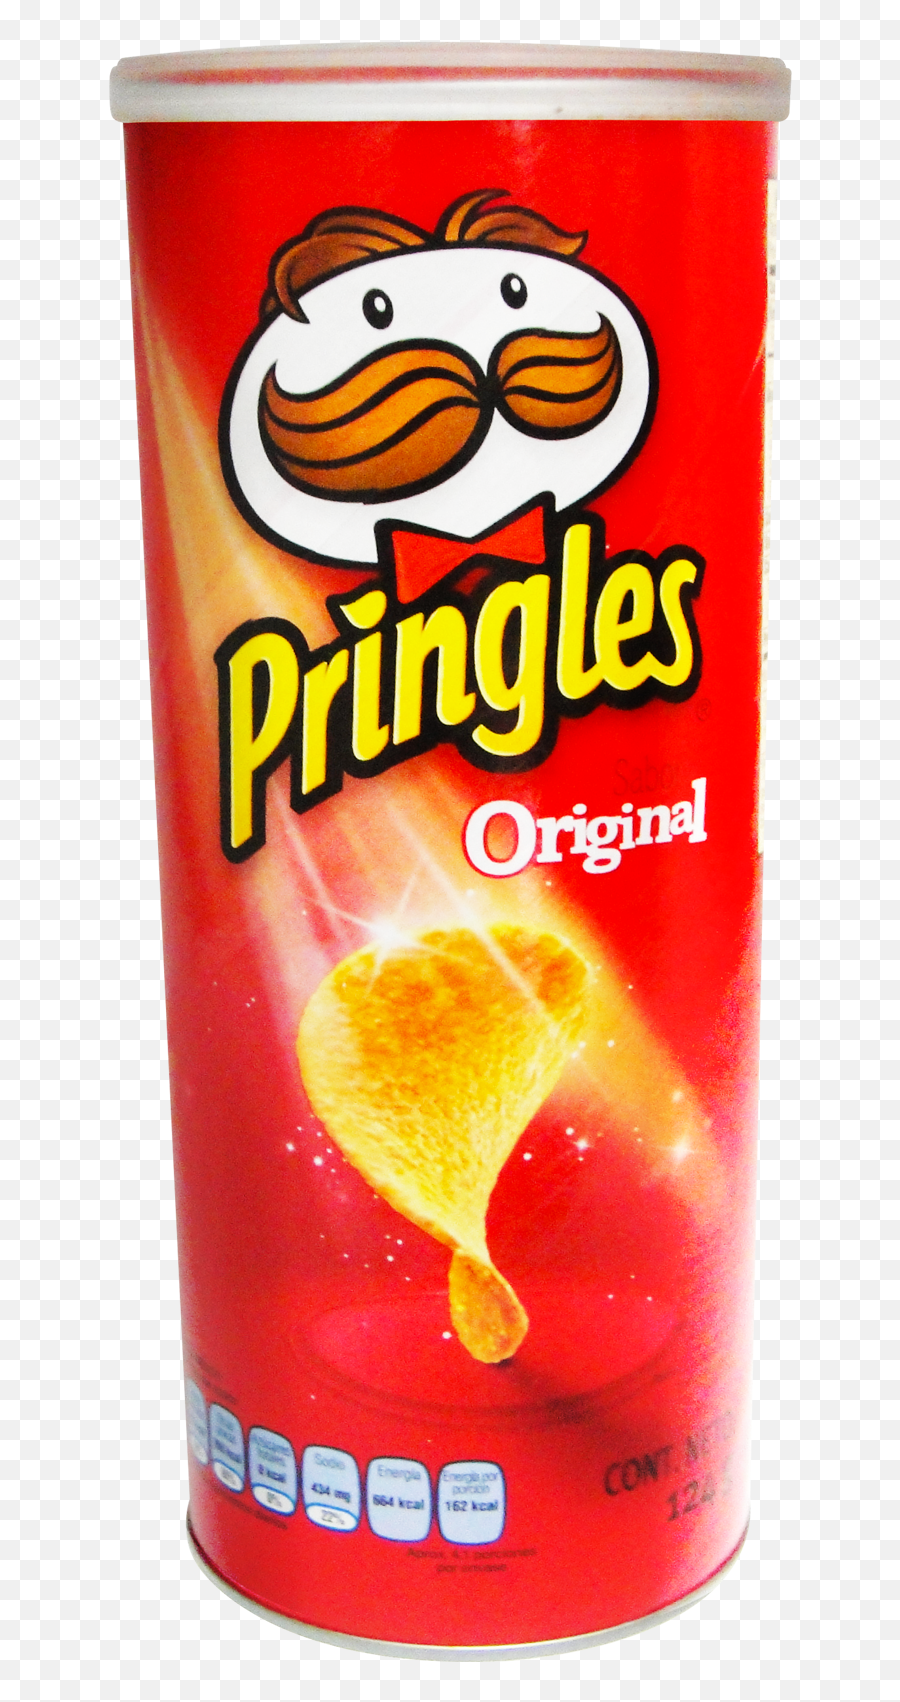 Pringles Original - Pringles Emoji,Pringles Png